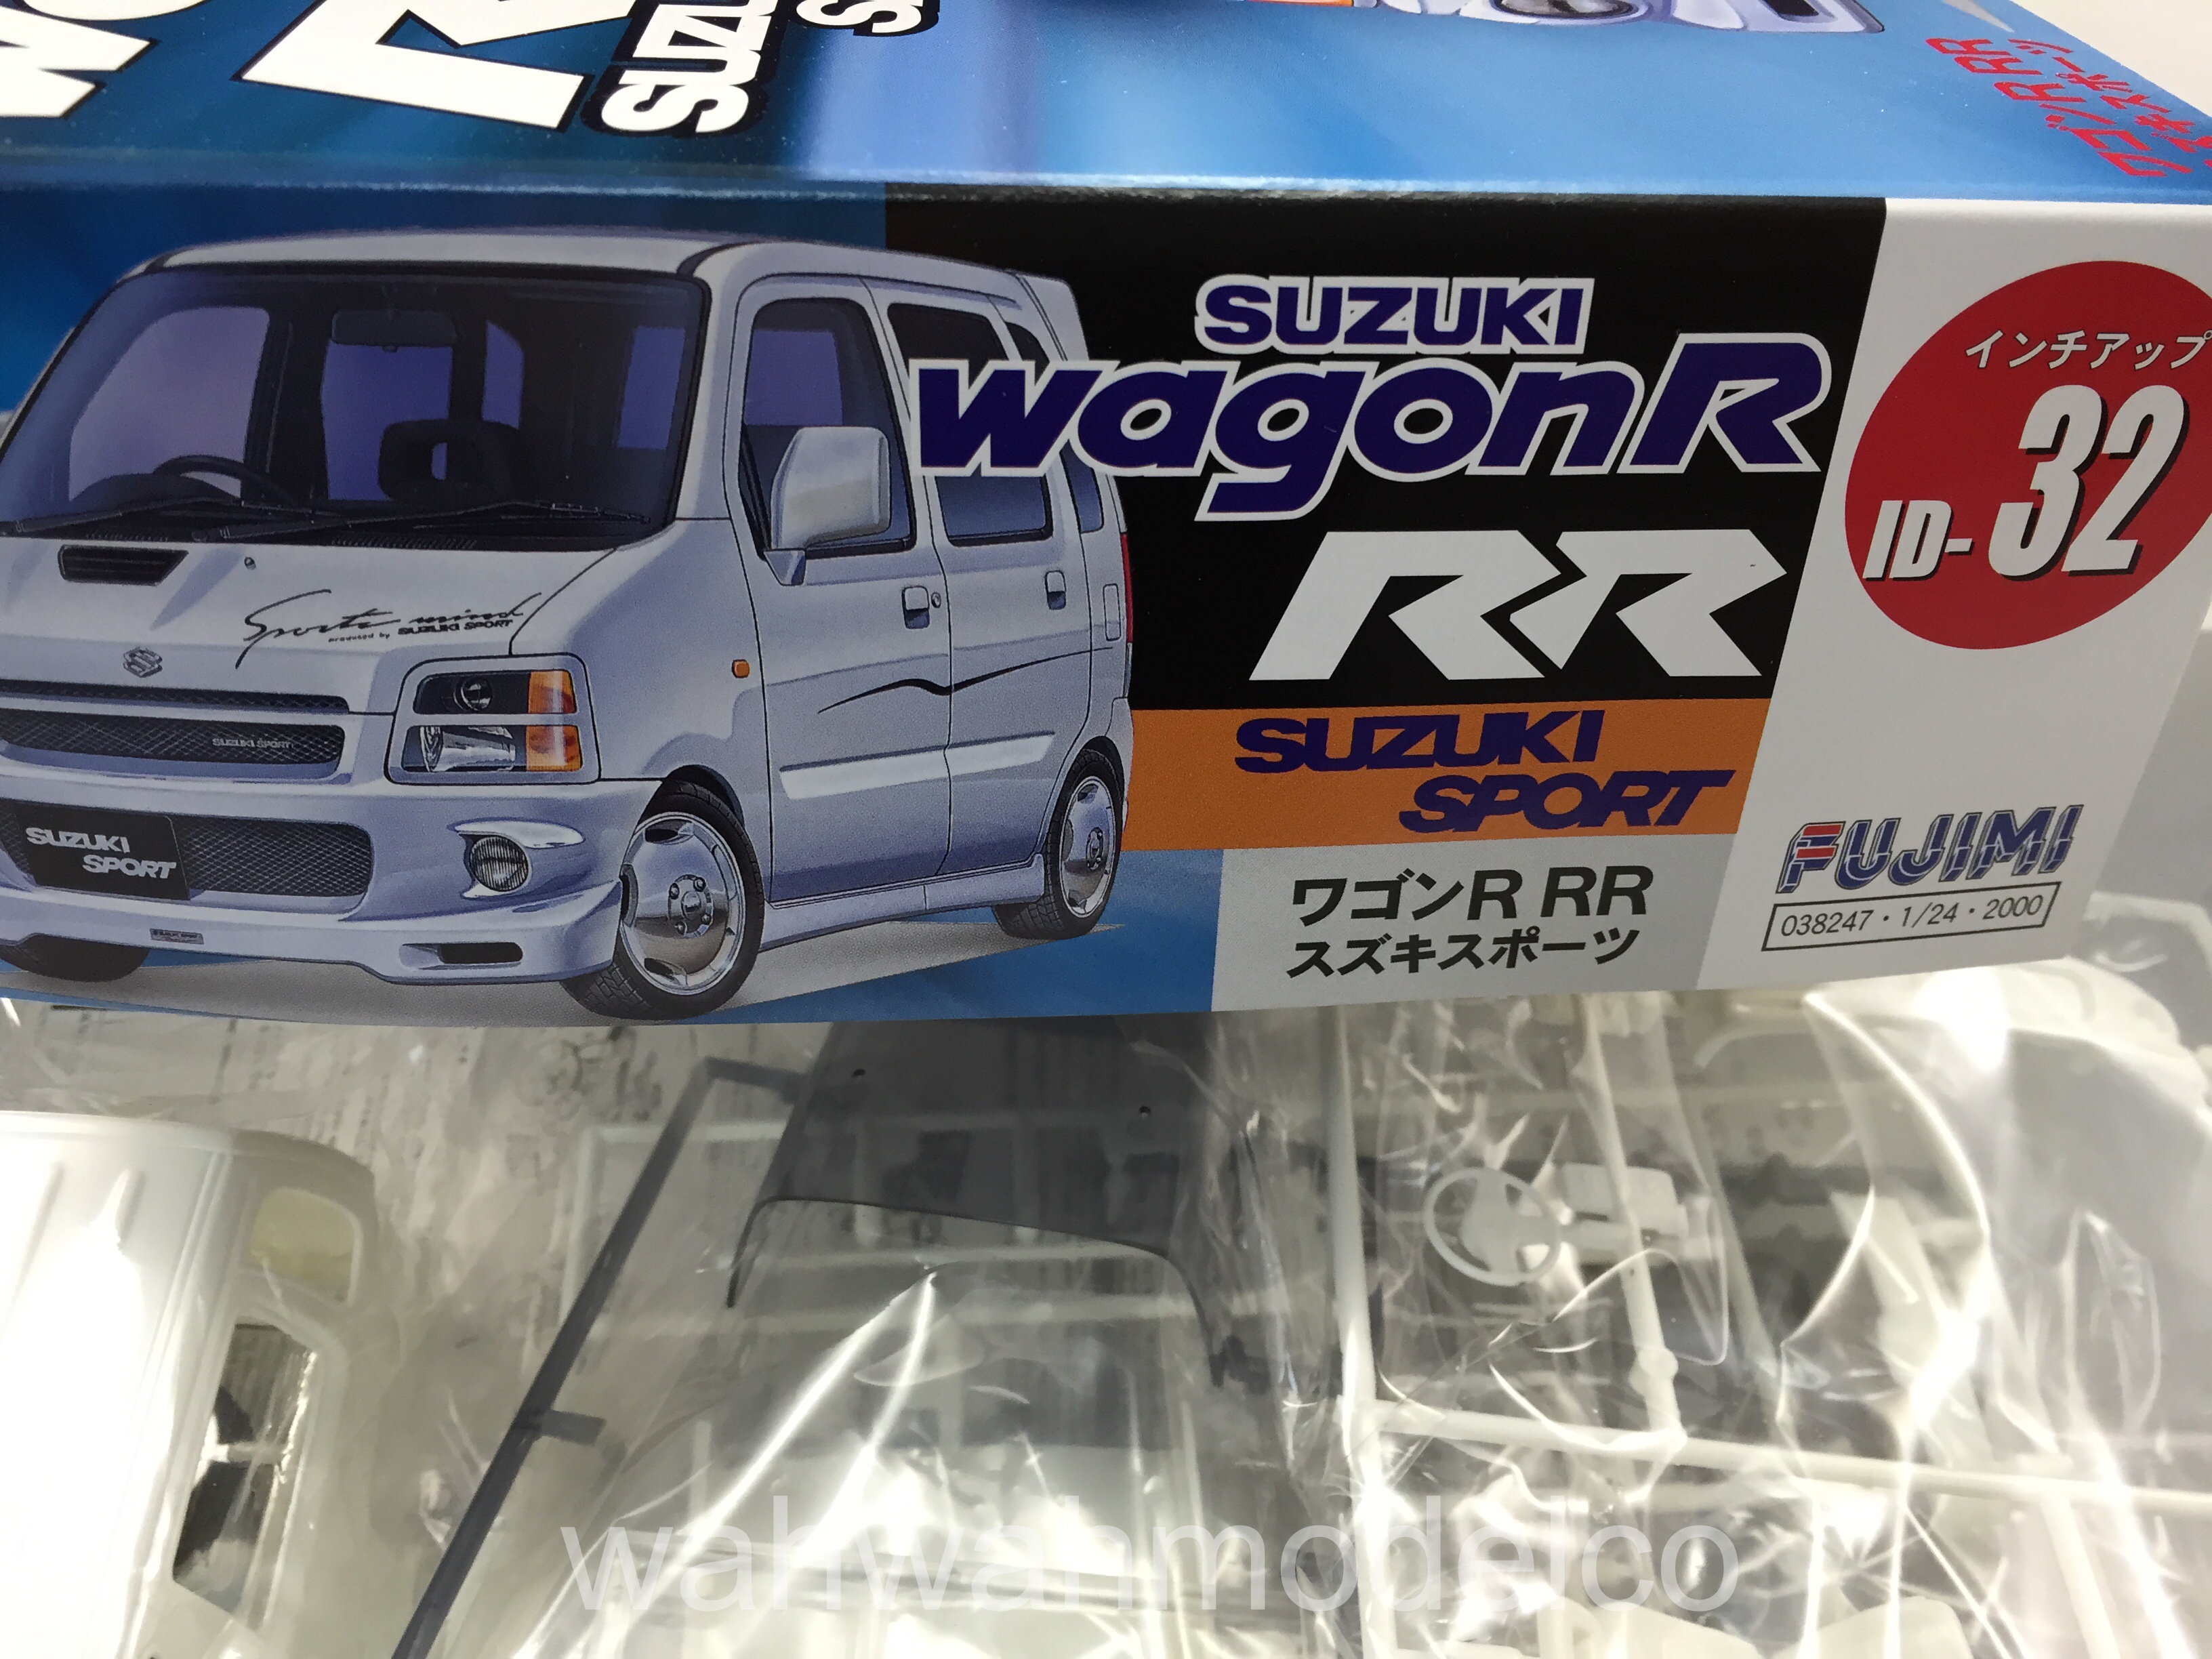 fujimi-038247-124-id-32-suzuki-wagon-r-rr